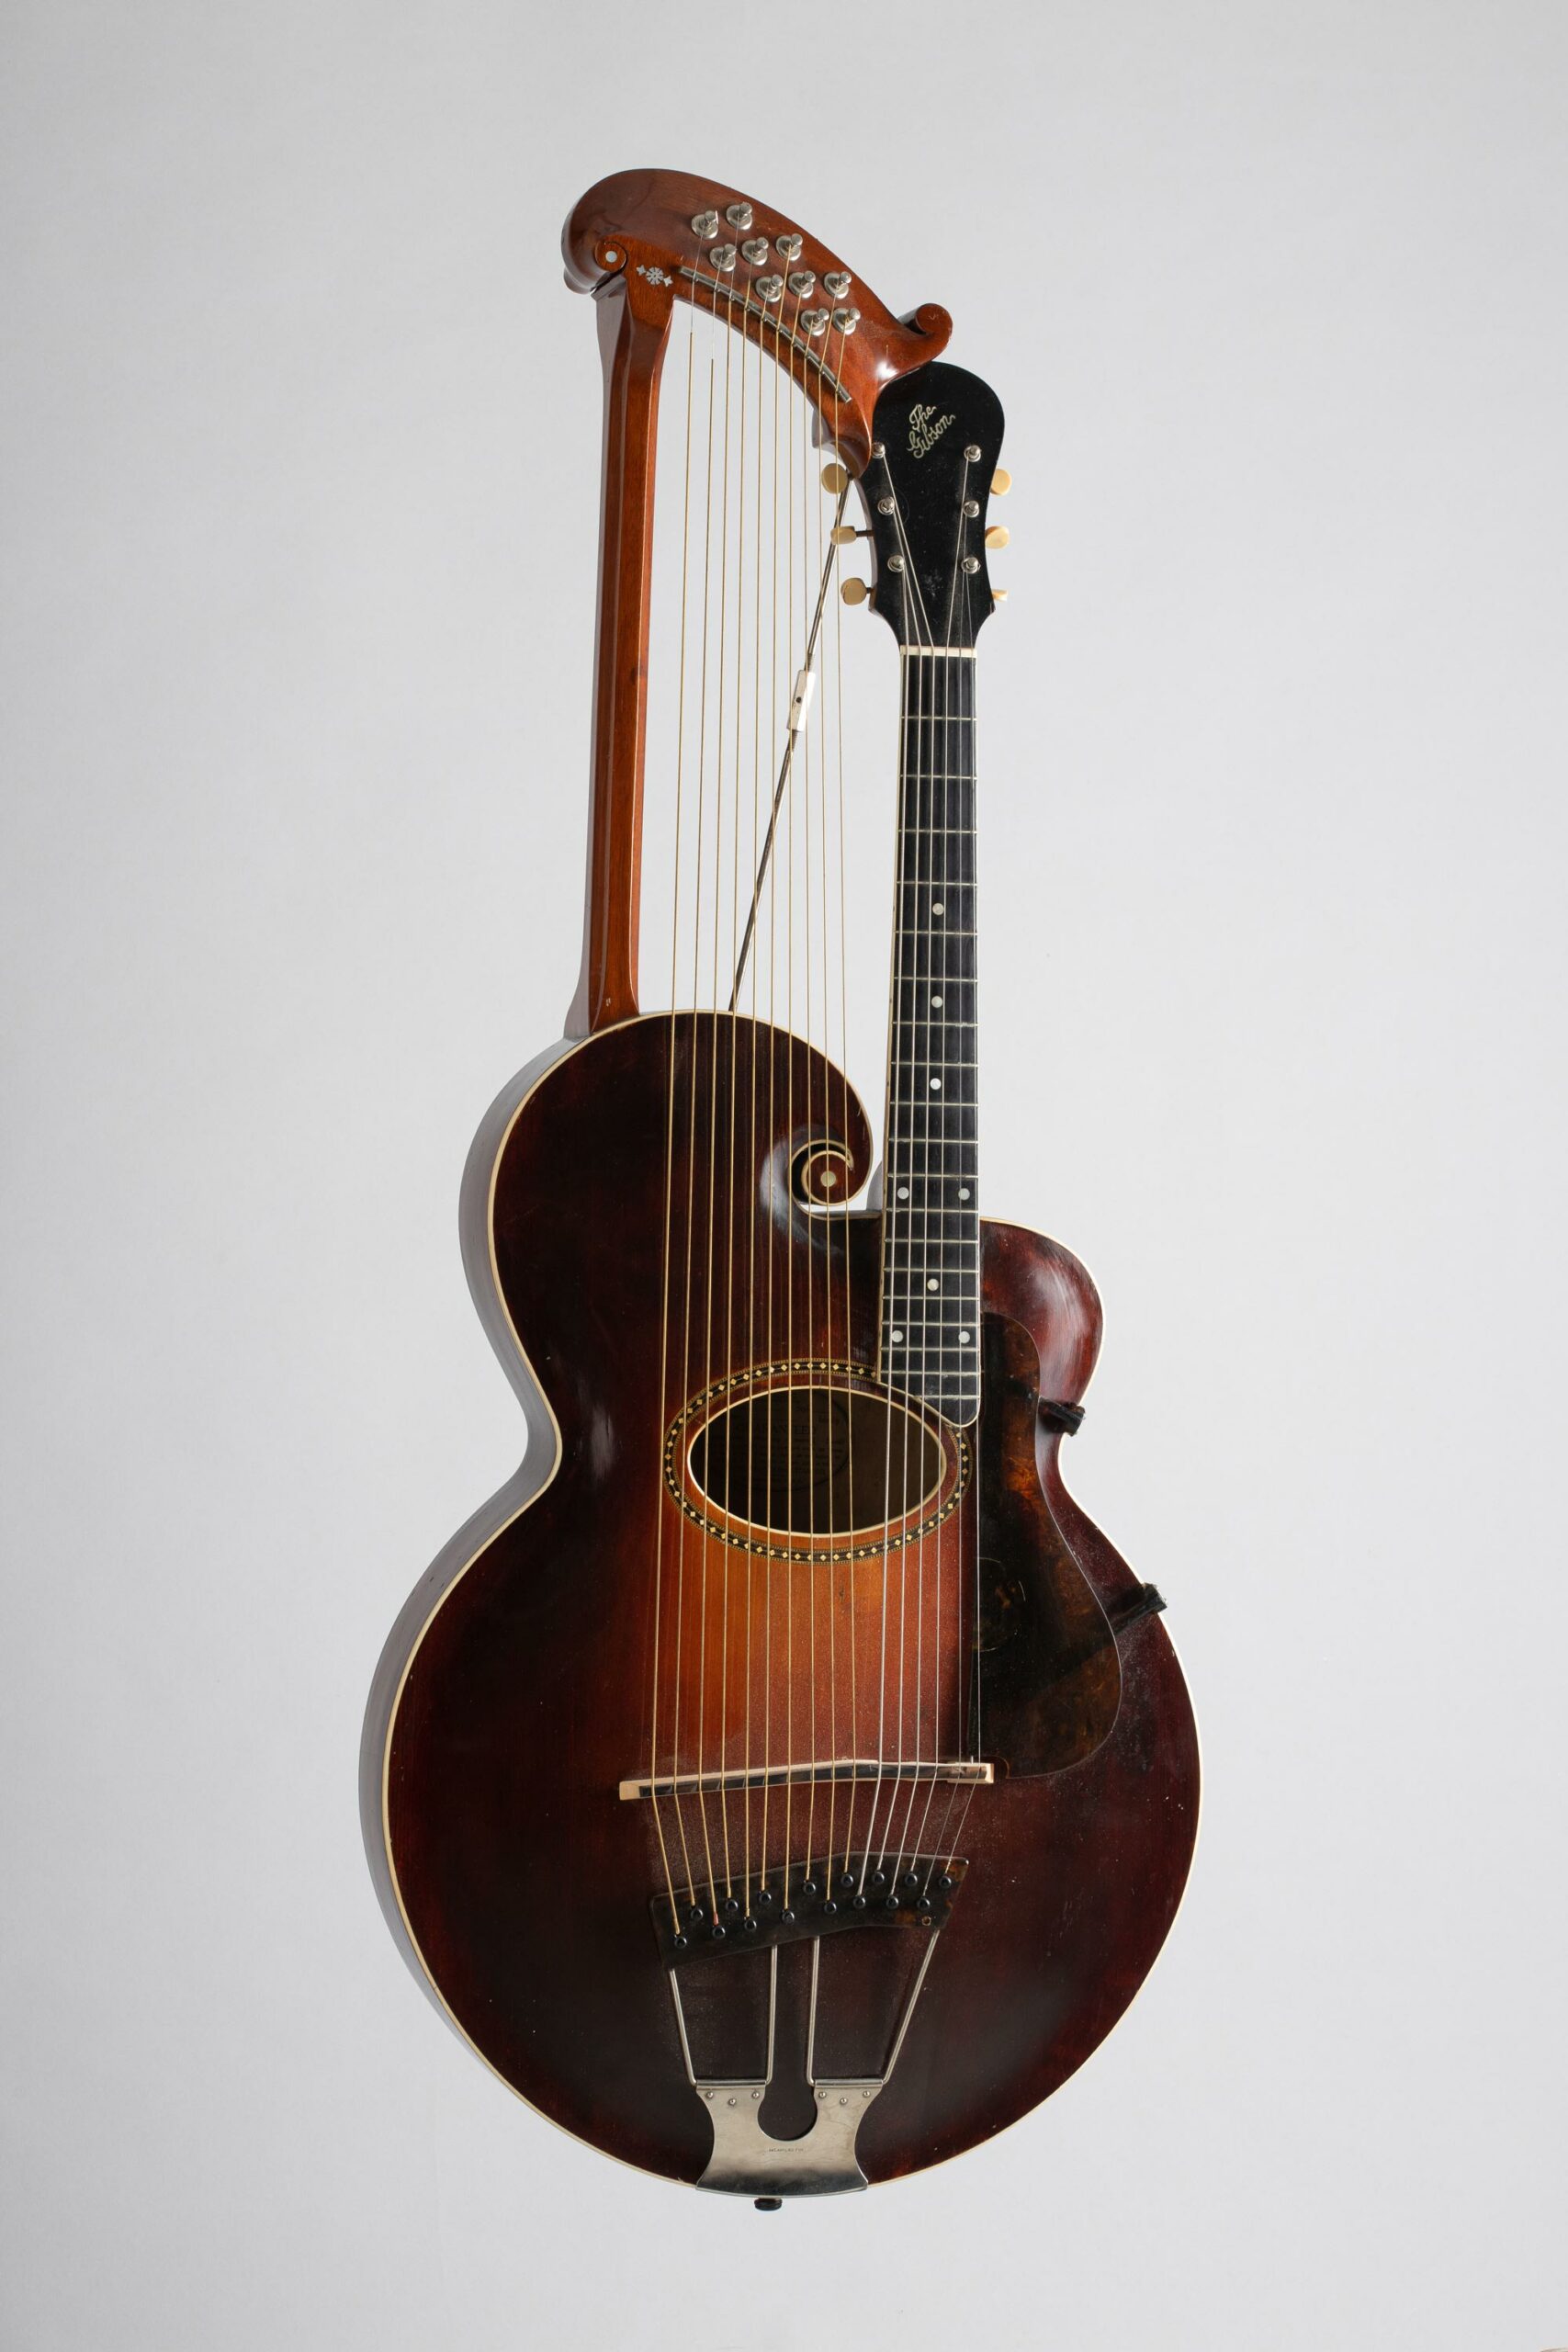 Guitare harpe de marque GIBSON modèle U n°1529 de 1909, Vichy Enchères, 5 novembre 2022 © Darbelet